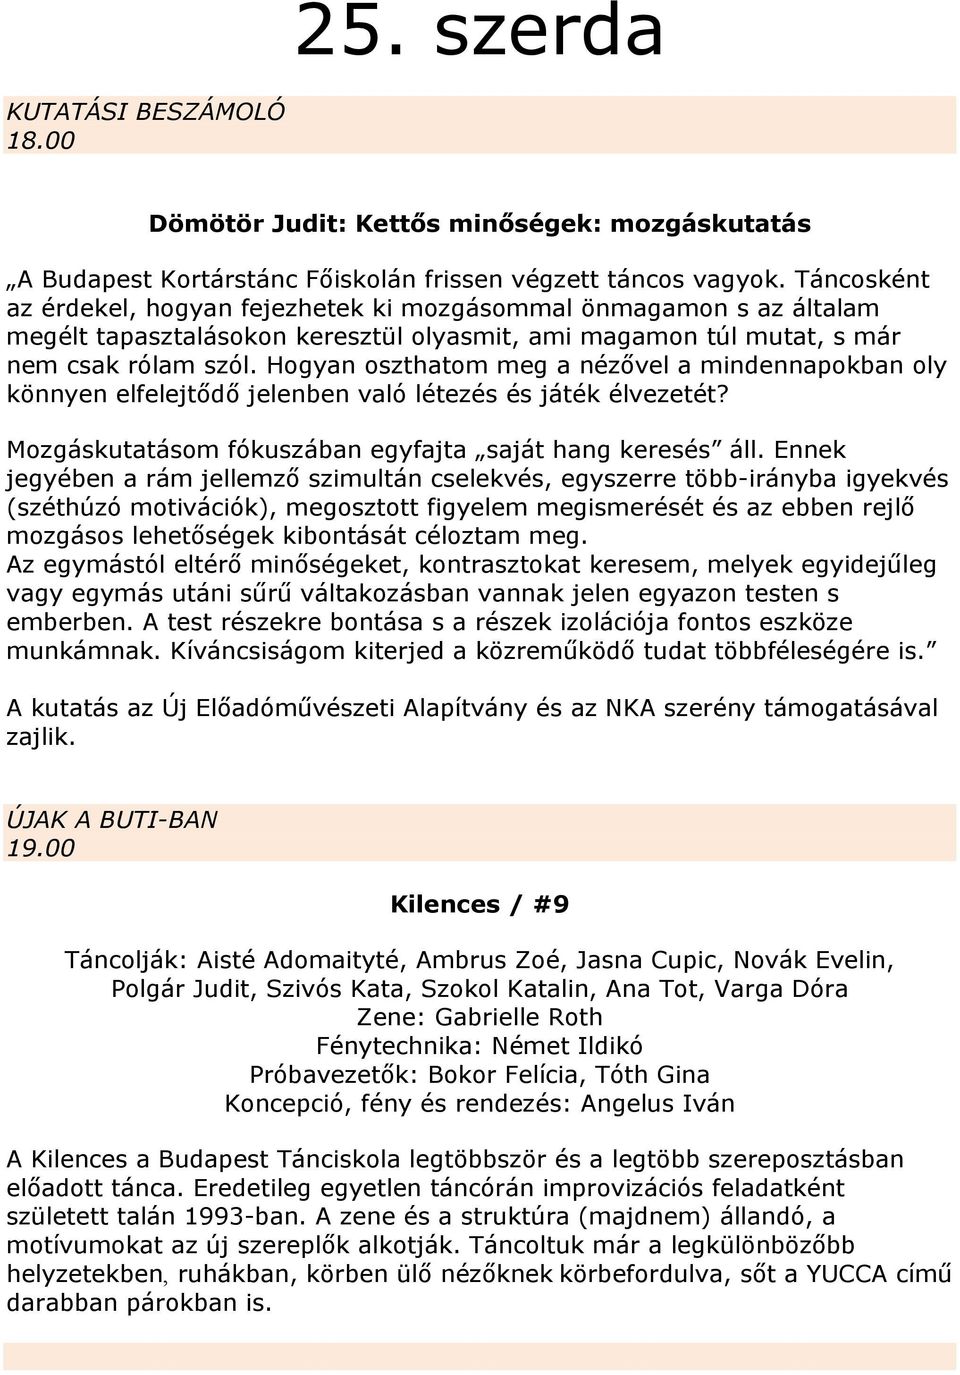 A BUDAPEST KORTÁRSTÁNC ALKOTÓ MŰHELY és a BUDAPEST TÁNCISKOLA bemutatja: ÚJ  TÁNCOK / 14 - PDF Ingyenes letöltés